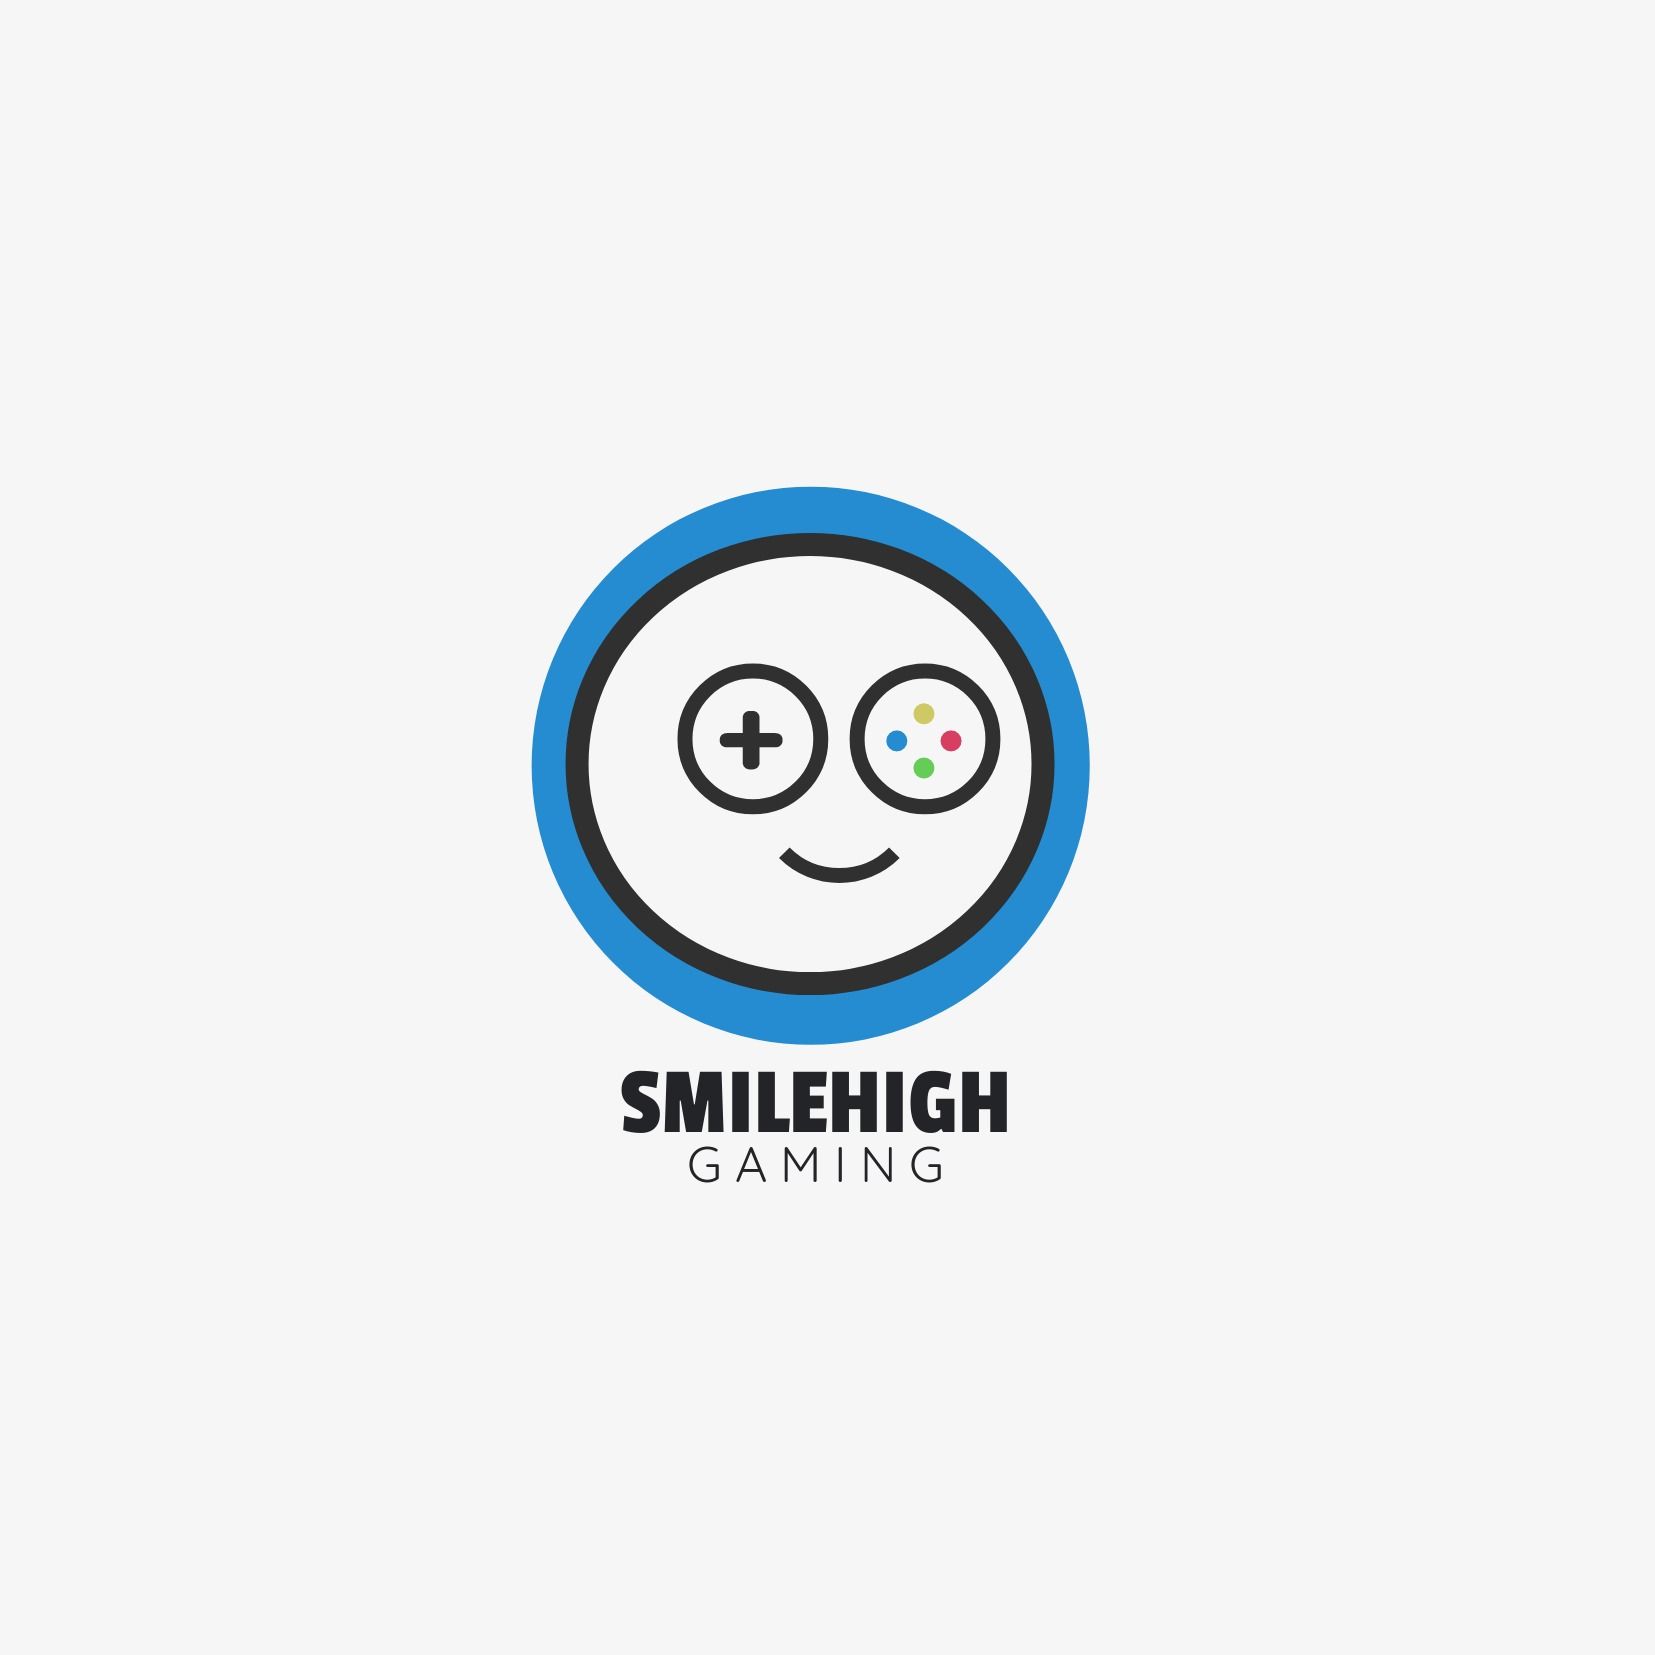 Logo de manette de jeu rond abstrait qui ressemble à un visage souriant et « Smilehigh gaming » comme titre - Comparaison des polices Passion 1 et Quick Sand - Image